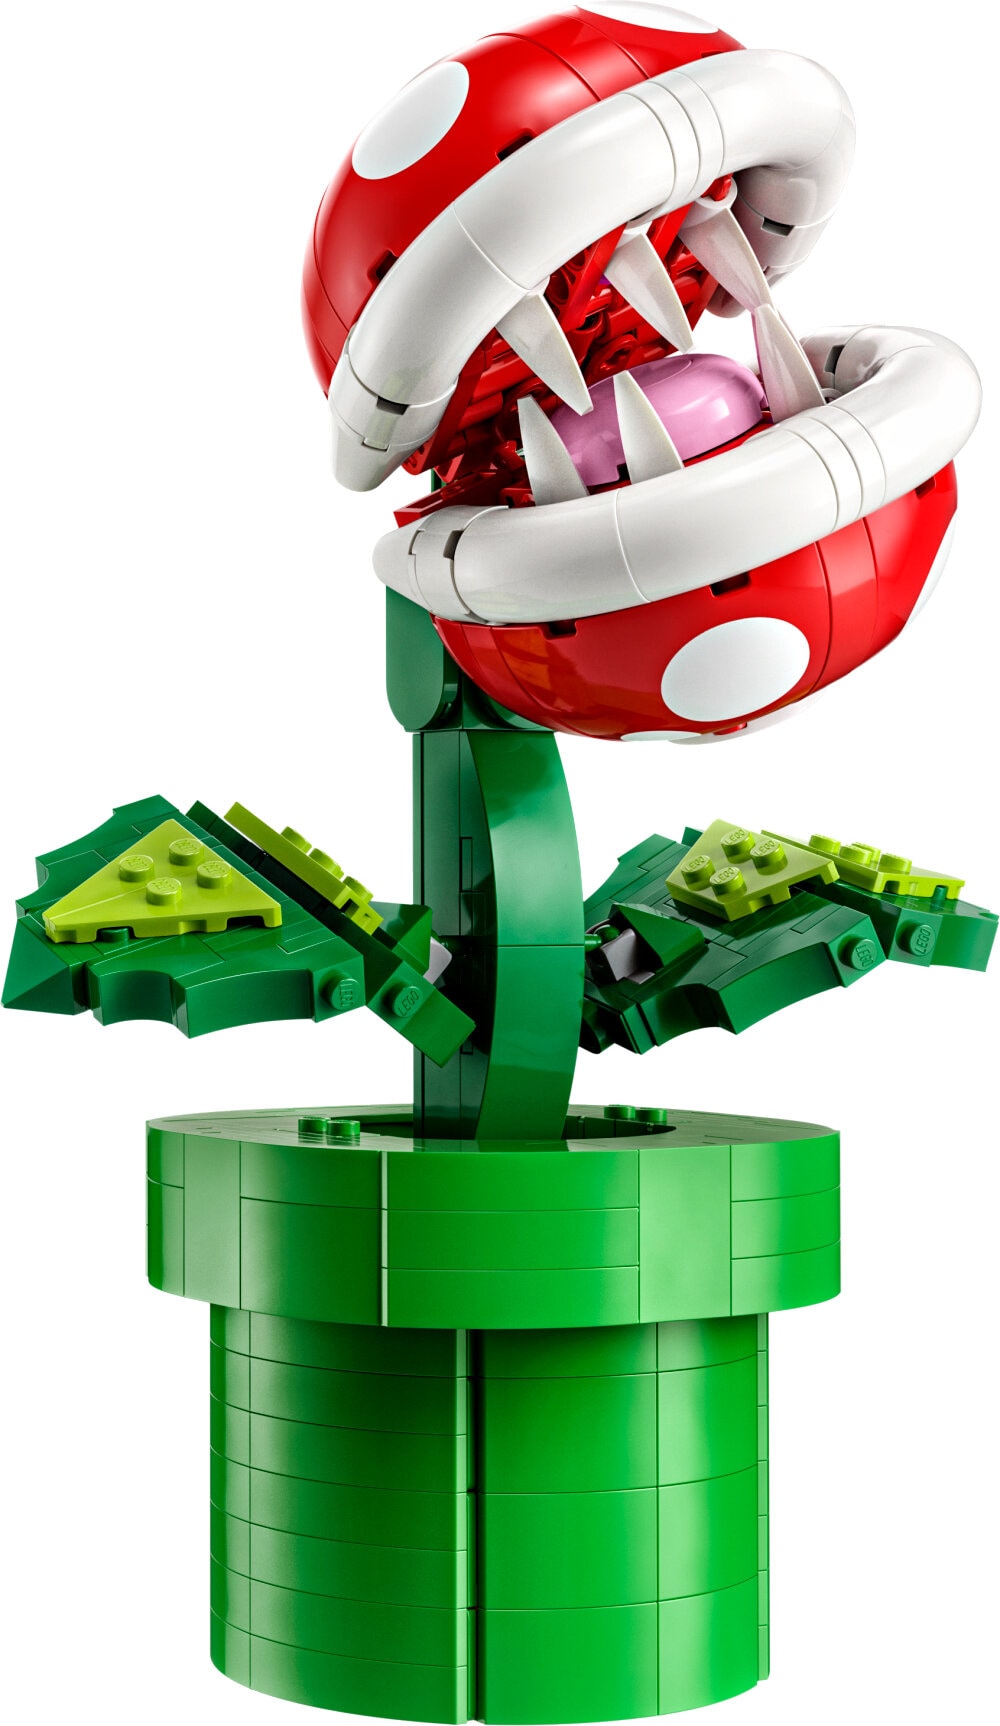 LEGO Super Mario - Piranha Plant 18+